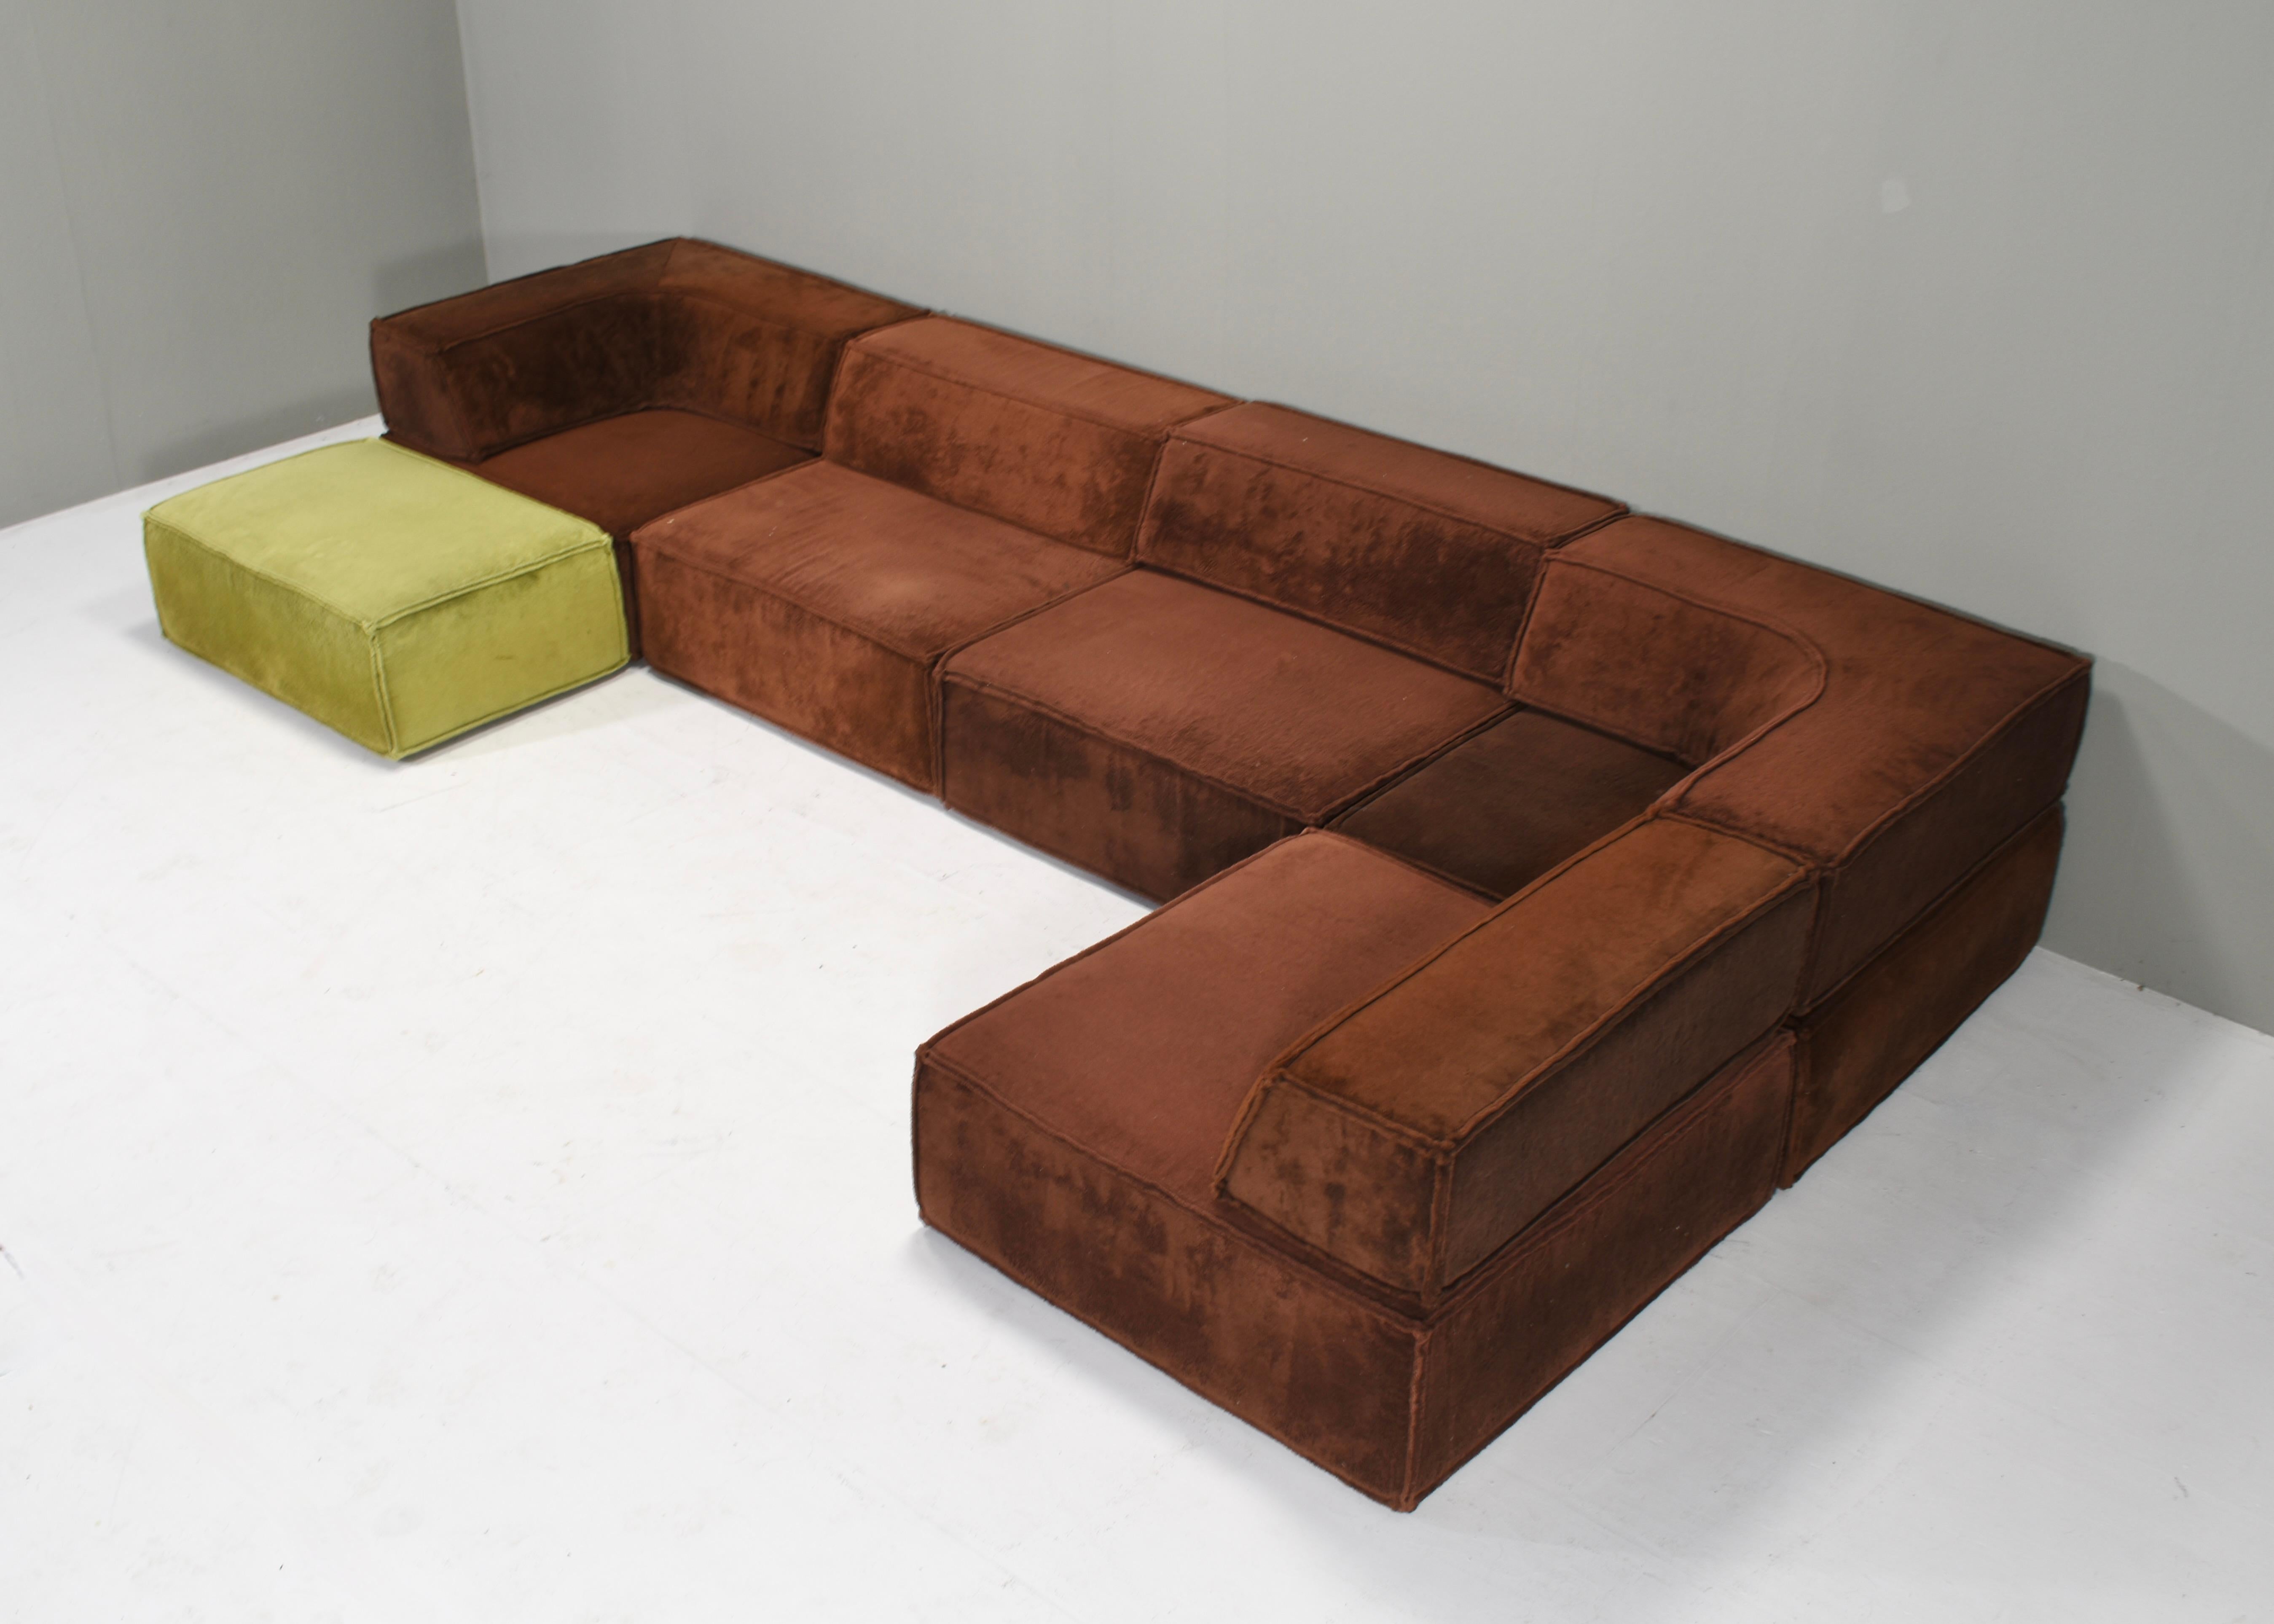 Querformatiges Sofa, entworfen von der Schweizer Designergruppe Form AG und in den 1970er Jahren von COR, Deutschland, hergestellt.
MUSS NEU GEPOLSTERT WERDEN. Fragen Sie uns nach den Möglichkeiten.
Neue Polsterung und neuer Stoff sind nicht im